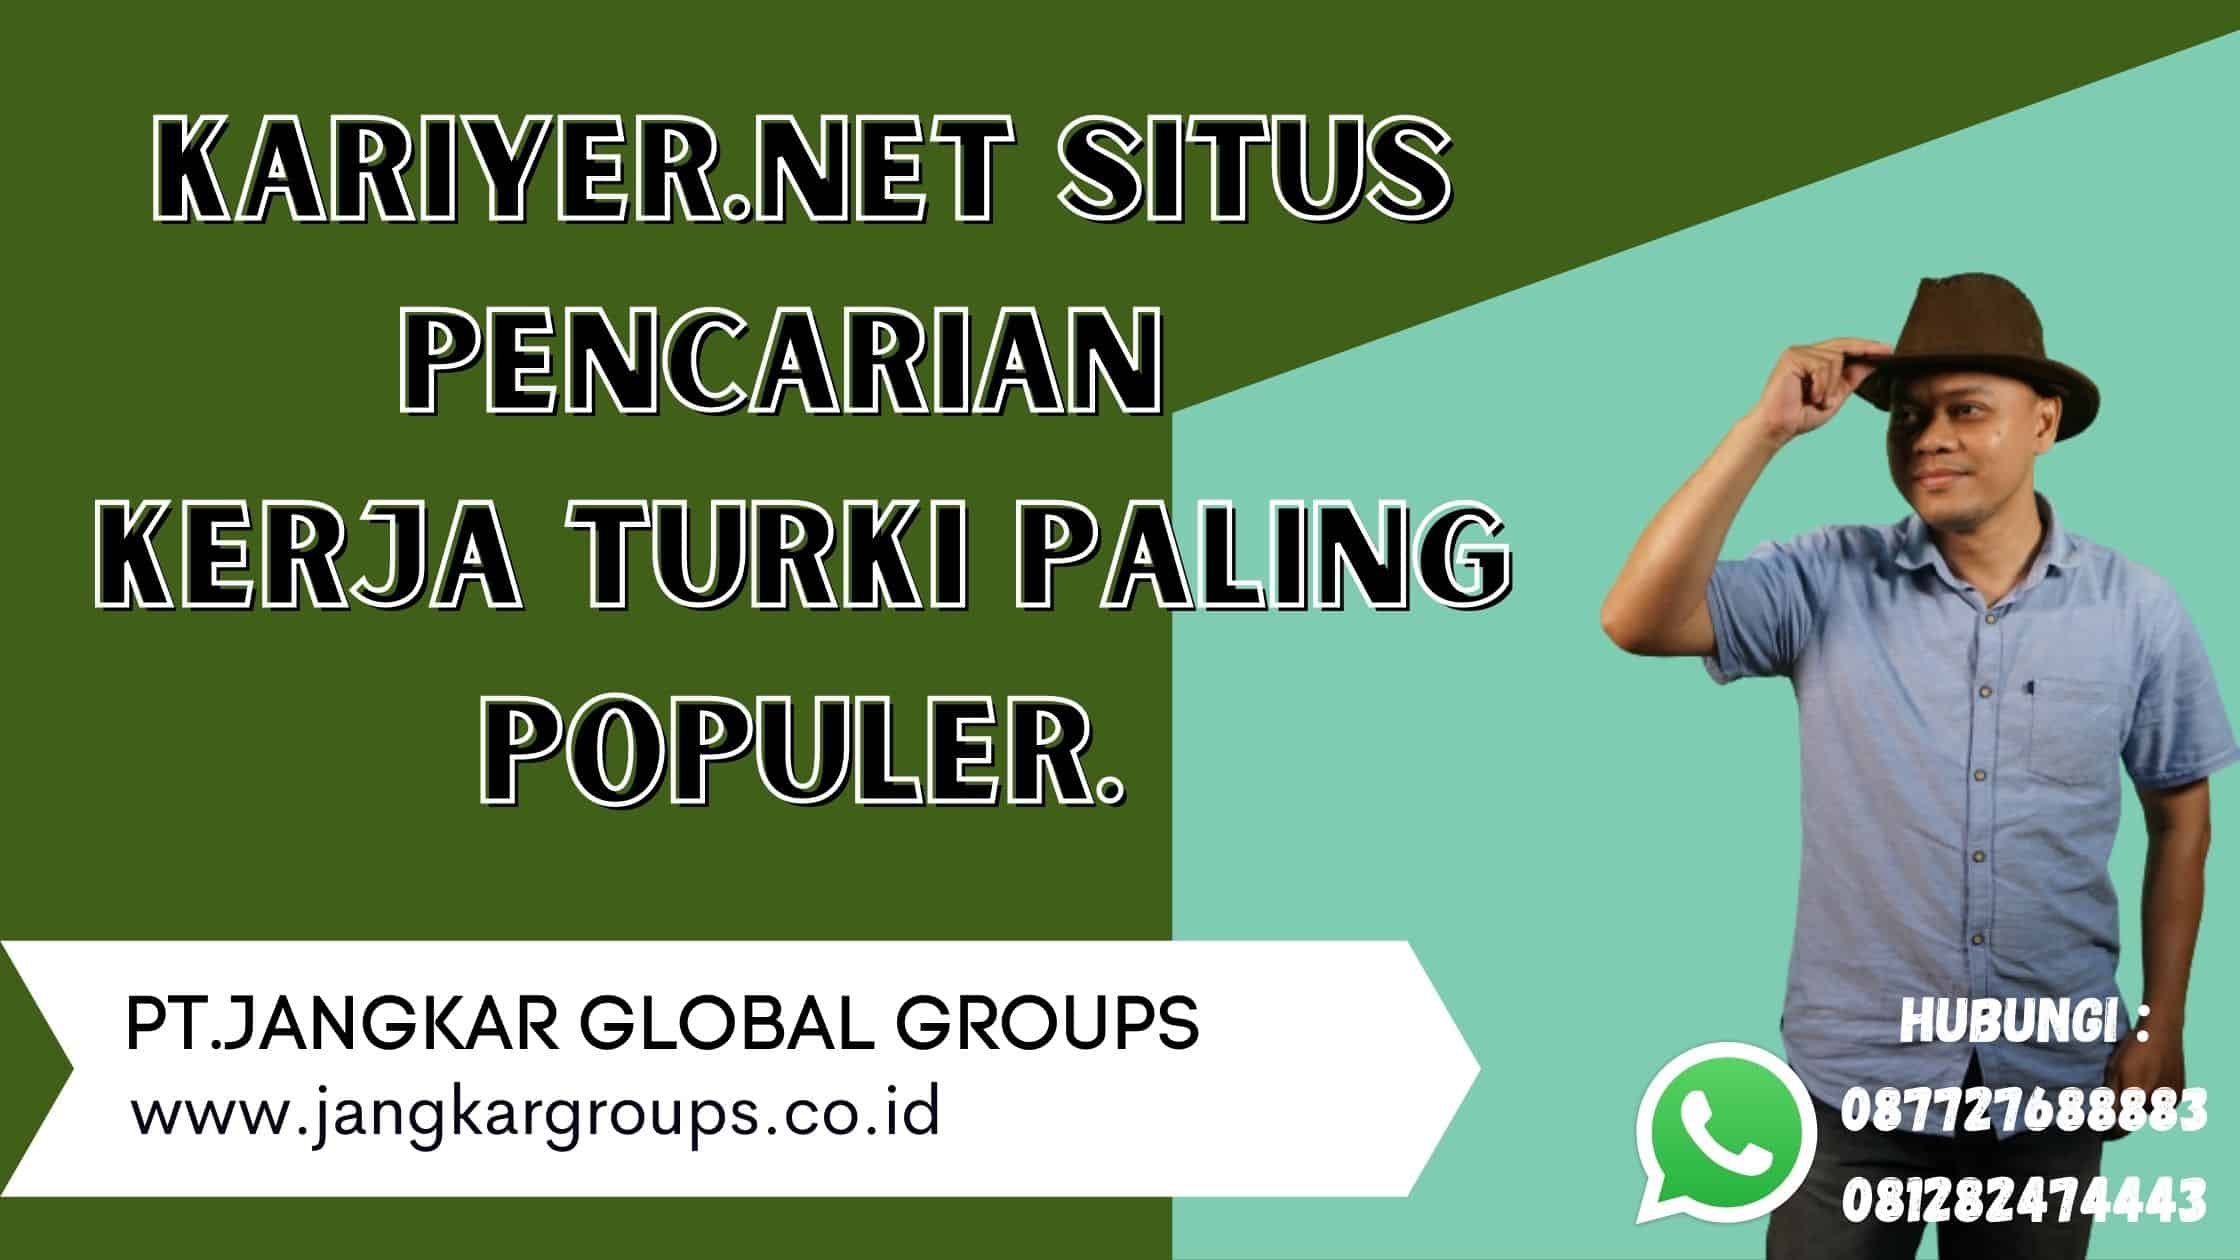 kariyer.net situs pencarian kerja turki paling populer.